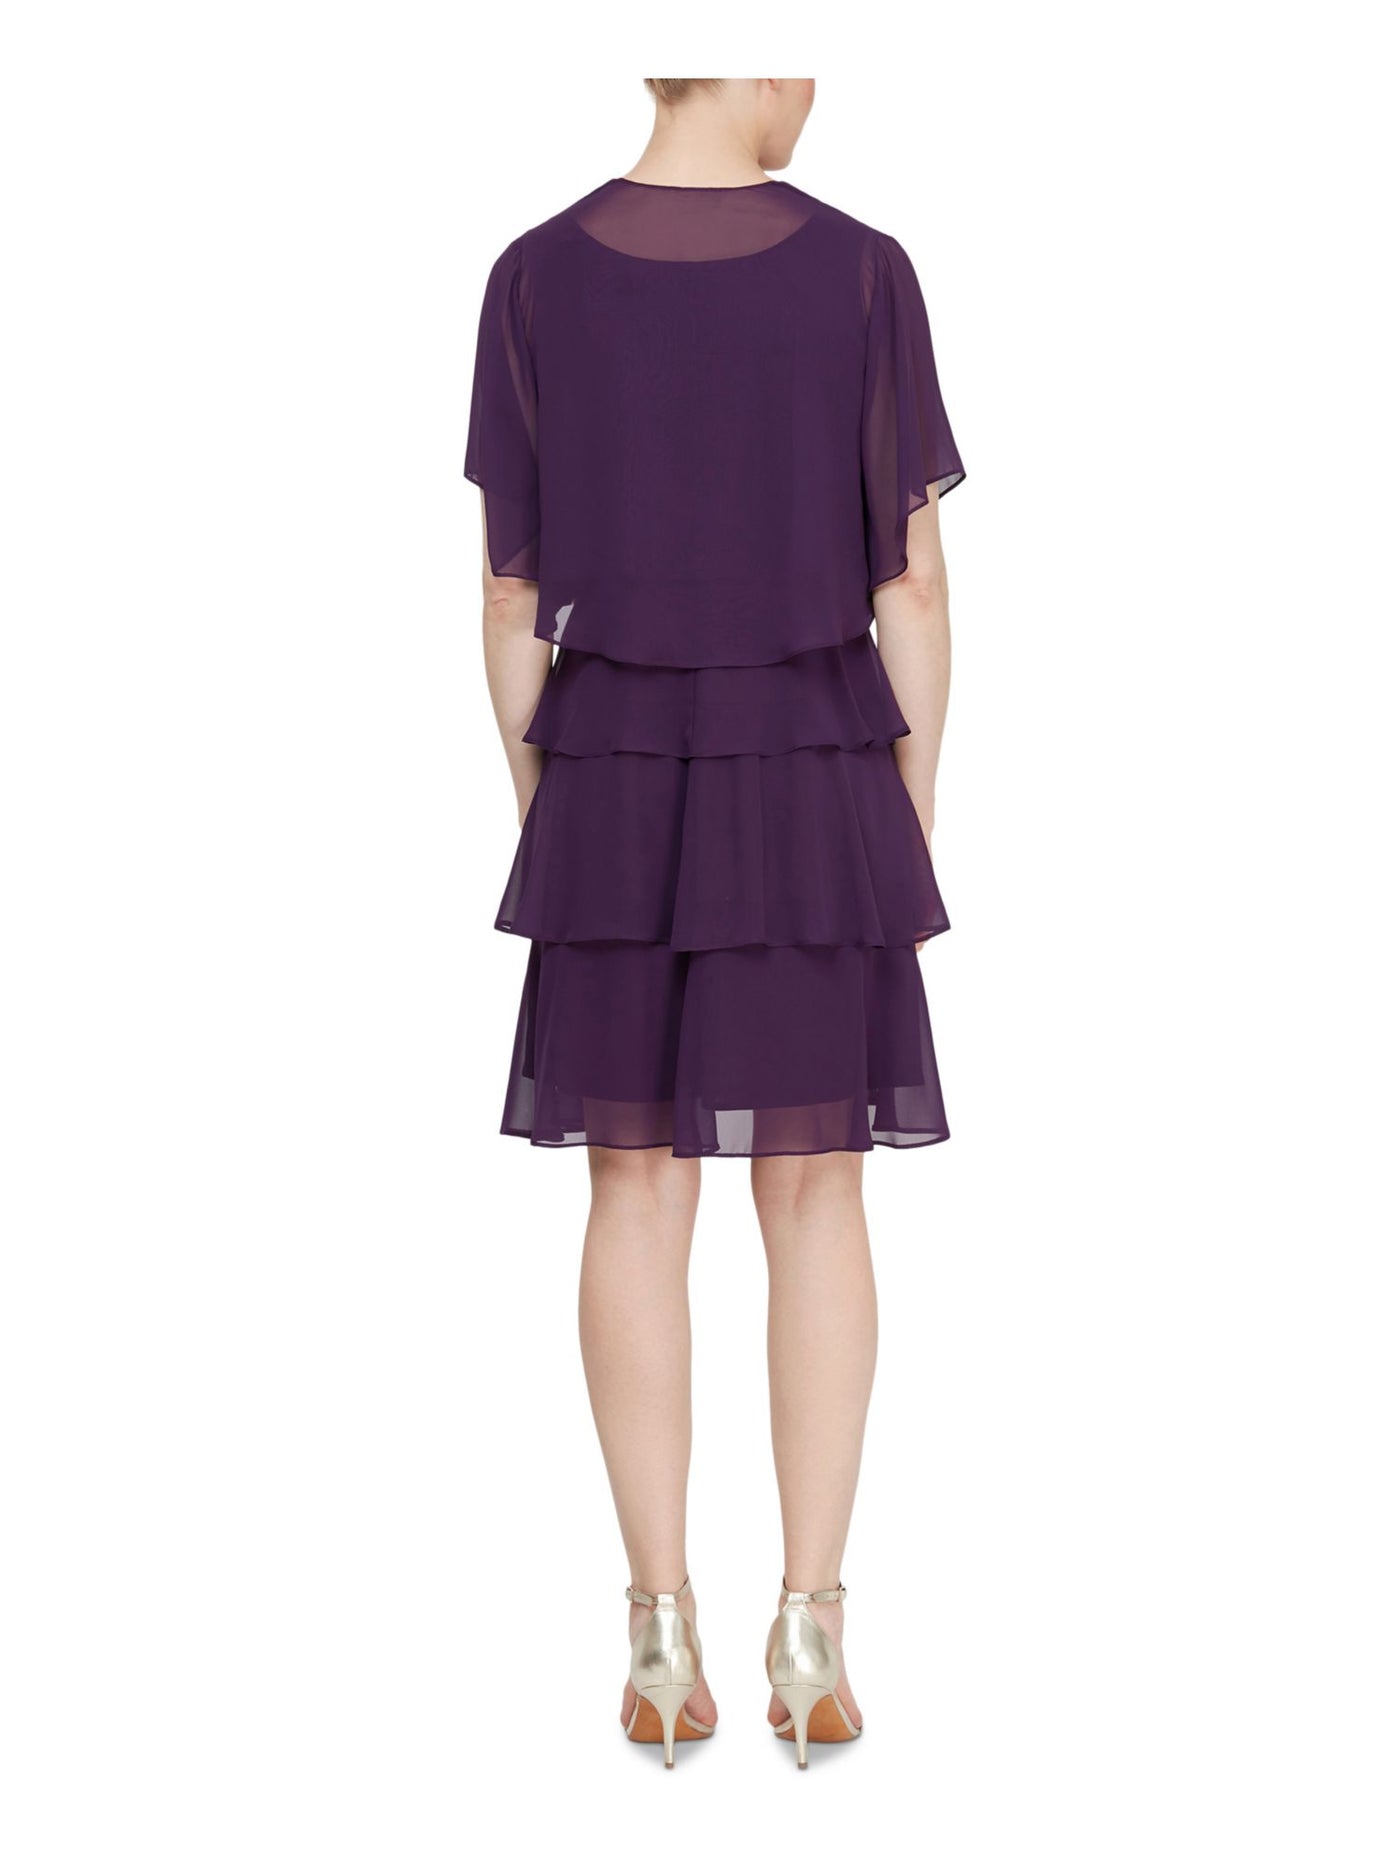 SLNY Womens Purple Sheer Open Front Evening Jacket Plus Size: 14W